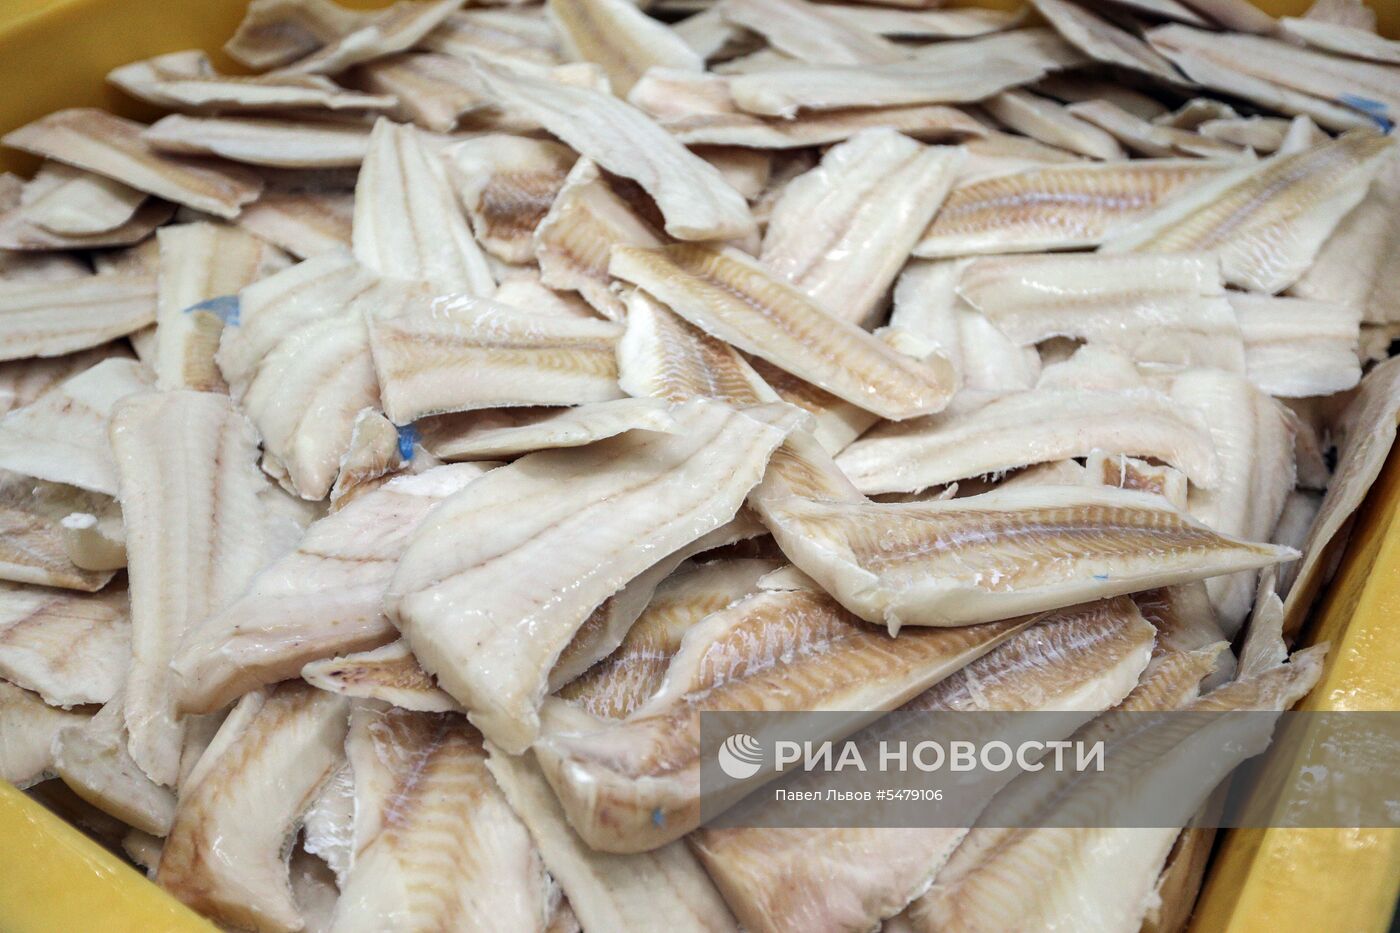 Завод по переработке рыбы «Полярное море» в Мурманской области